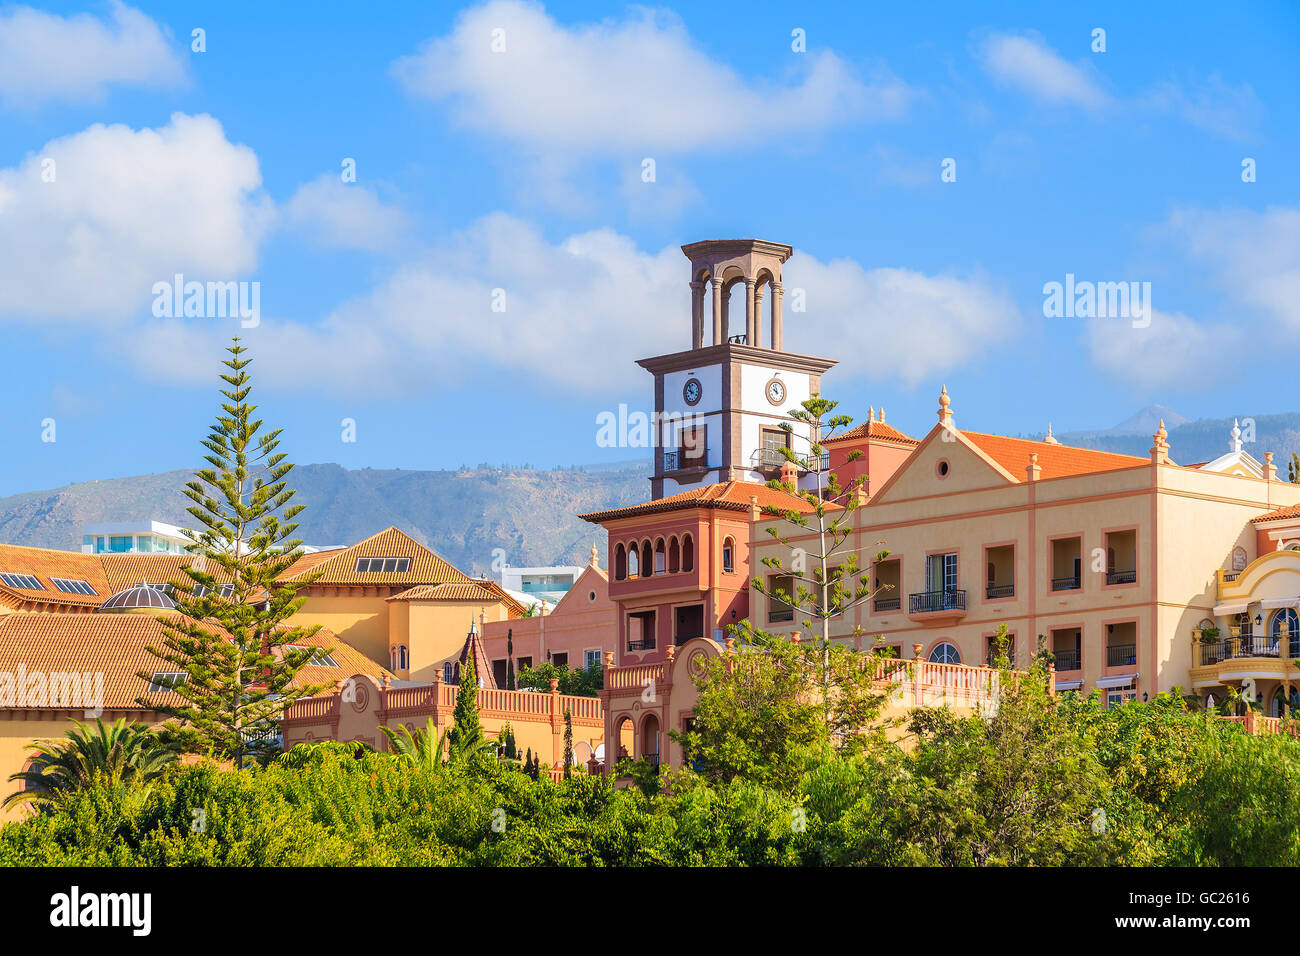 Eine Ansicht des Luxushotels am Strand El Duque in Costa Adeje Urlaub Resort, Kanarische Inseln, Spanien Stockfoto